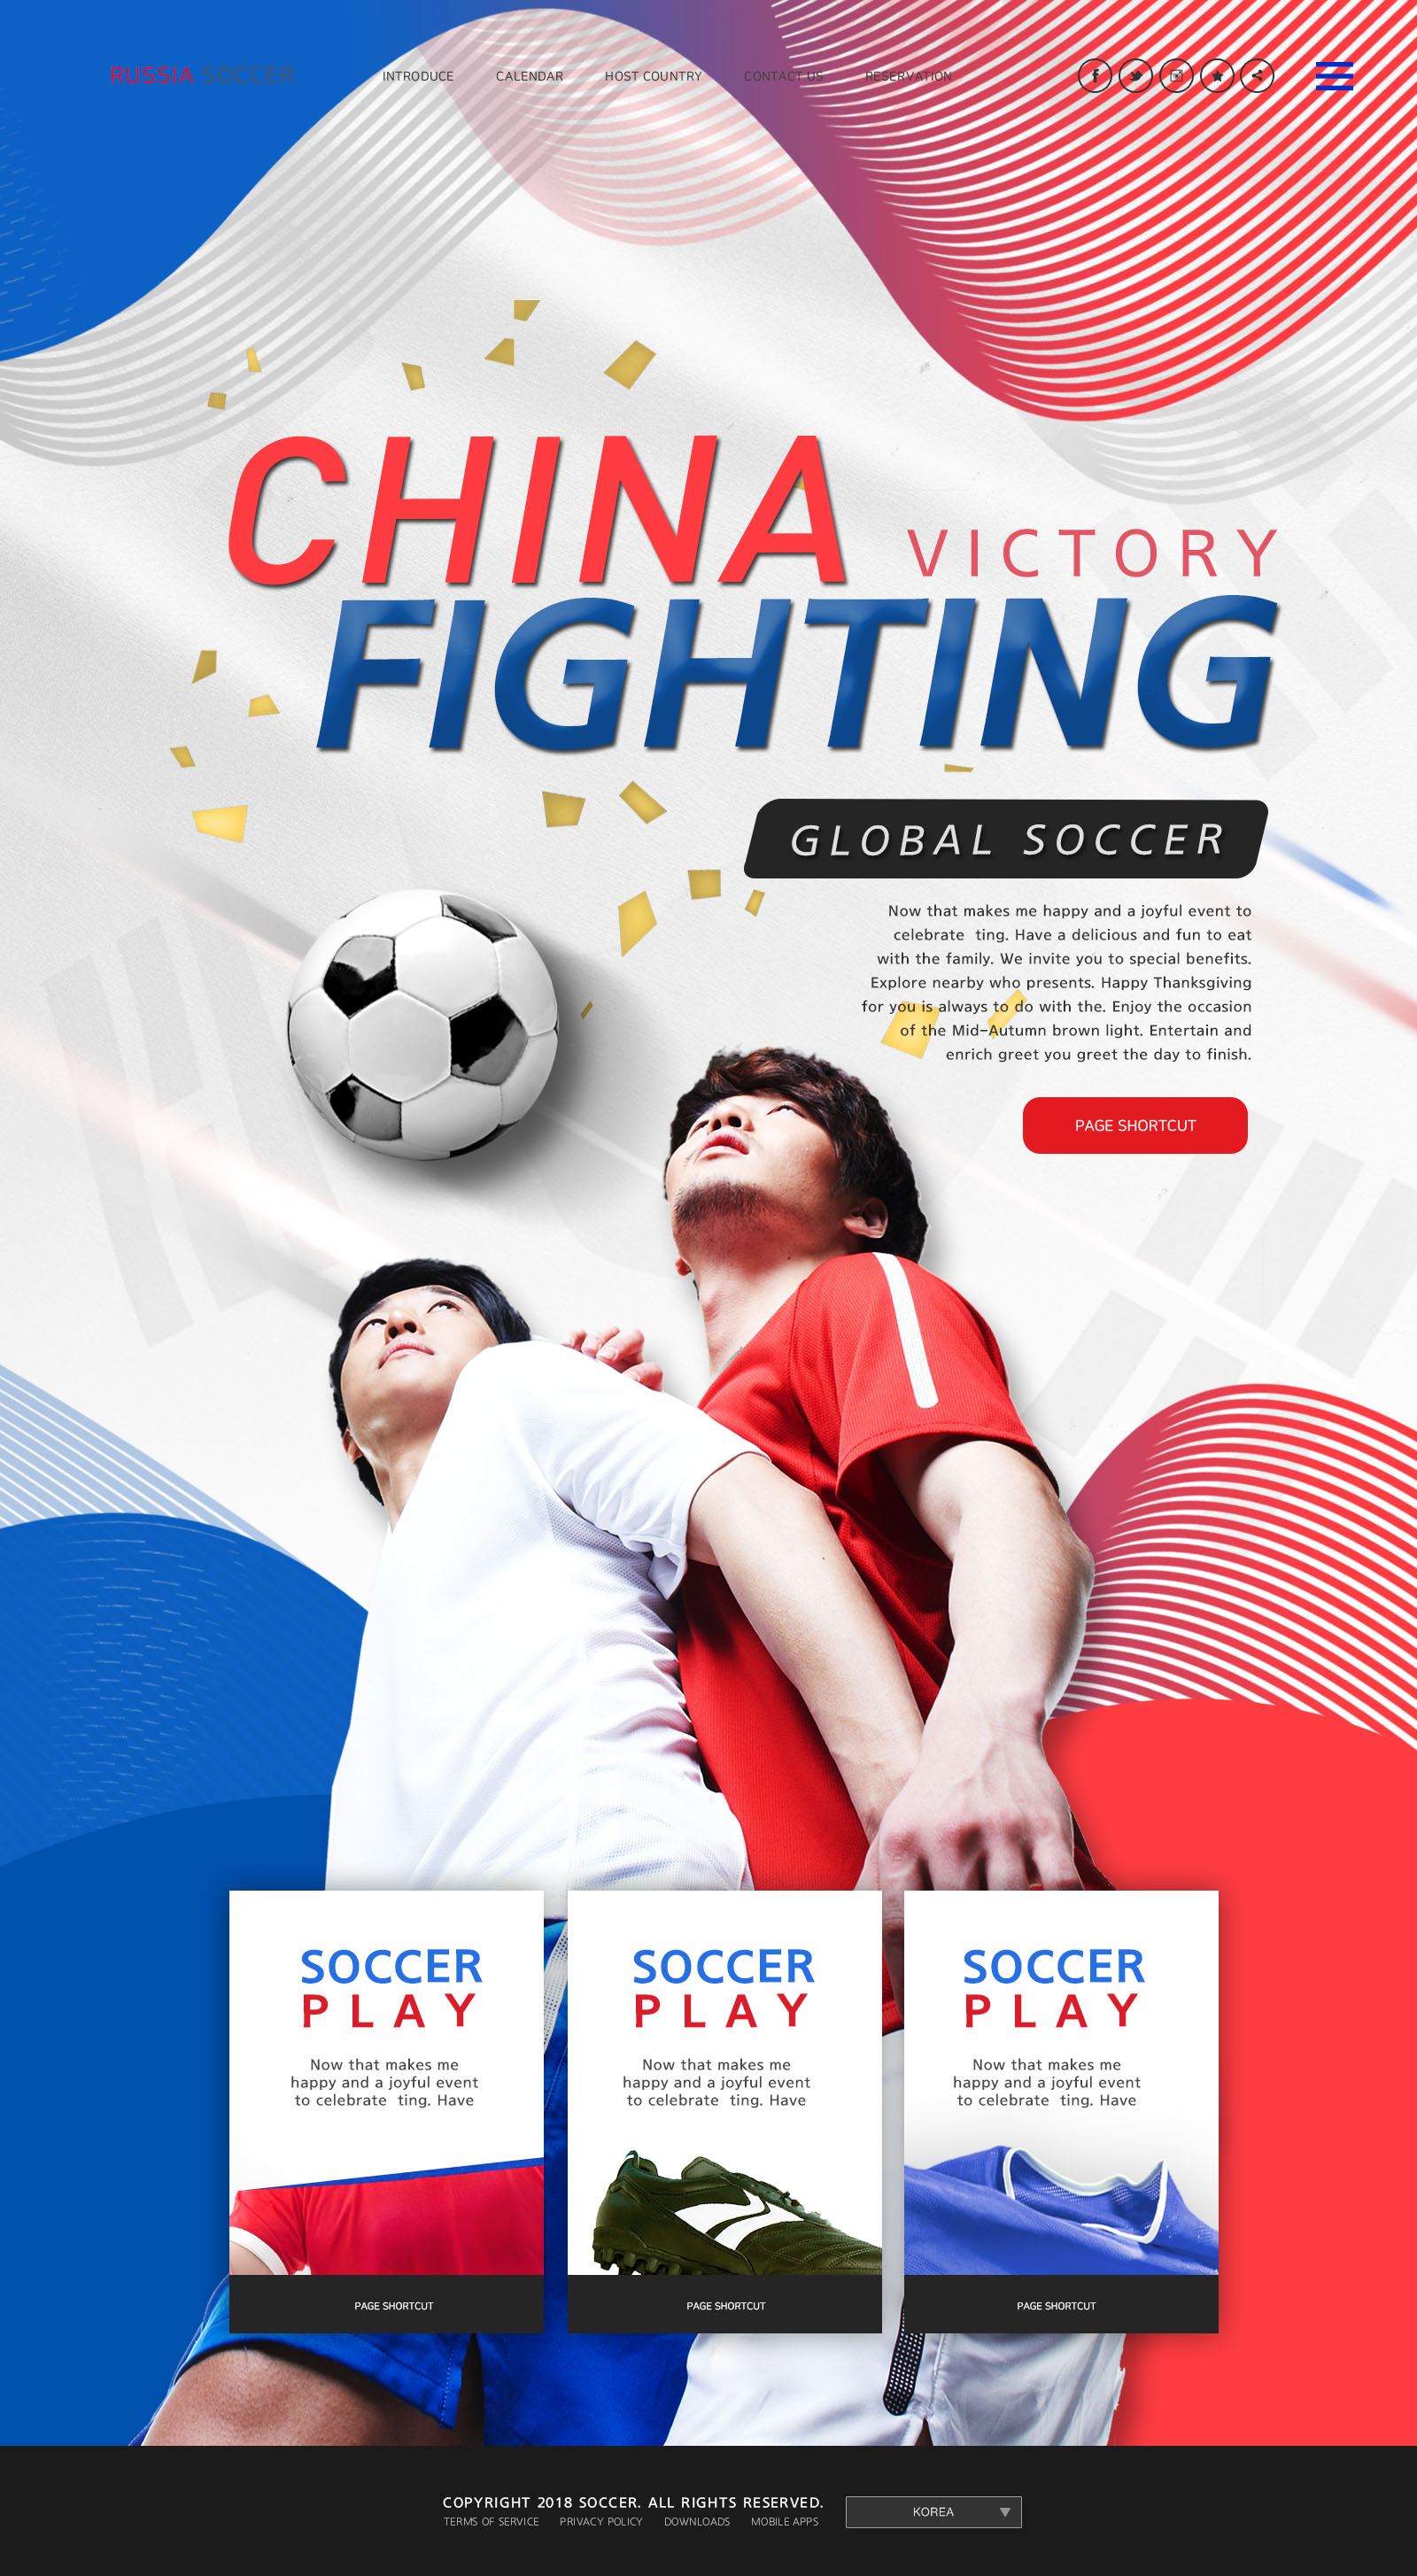 世界杯足球专题广告设计PSD模板第一素材精选(韩国风格)插图(6)